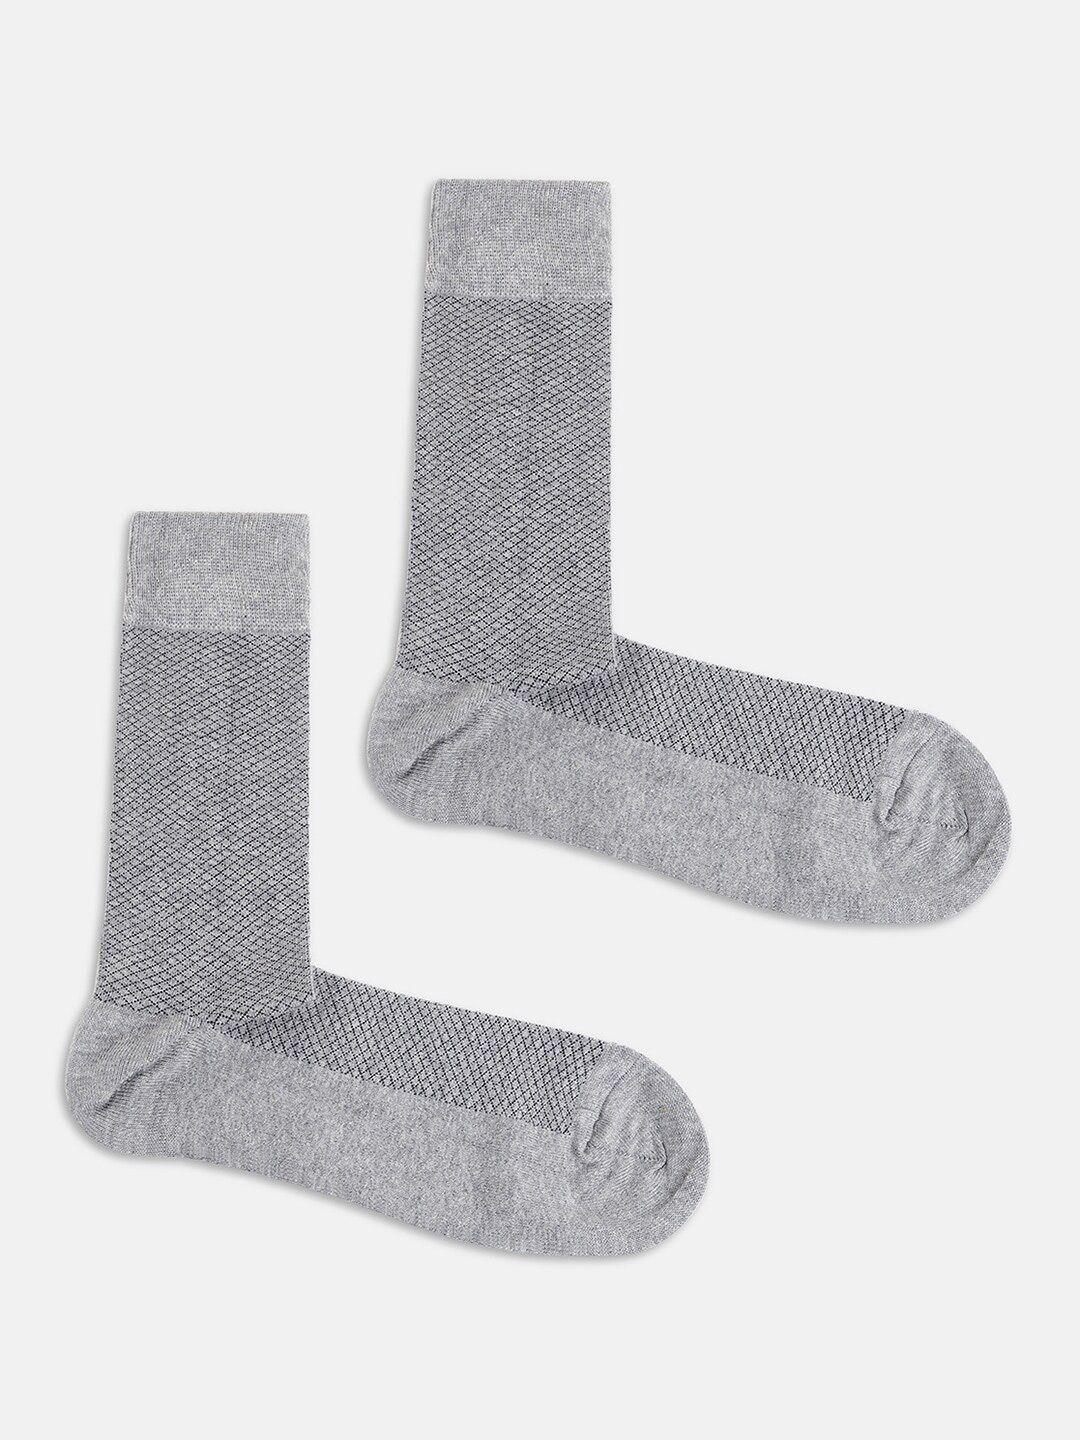 blackberrys-men-cotton-calf-length-socks